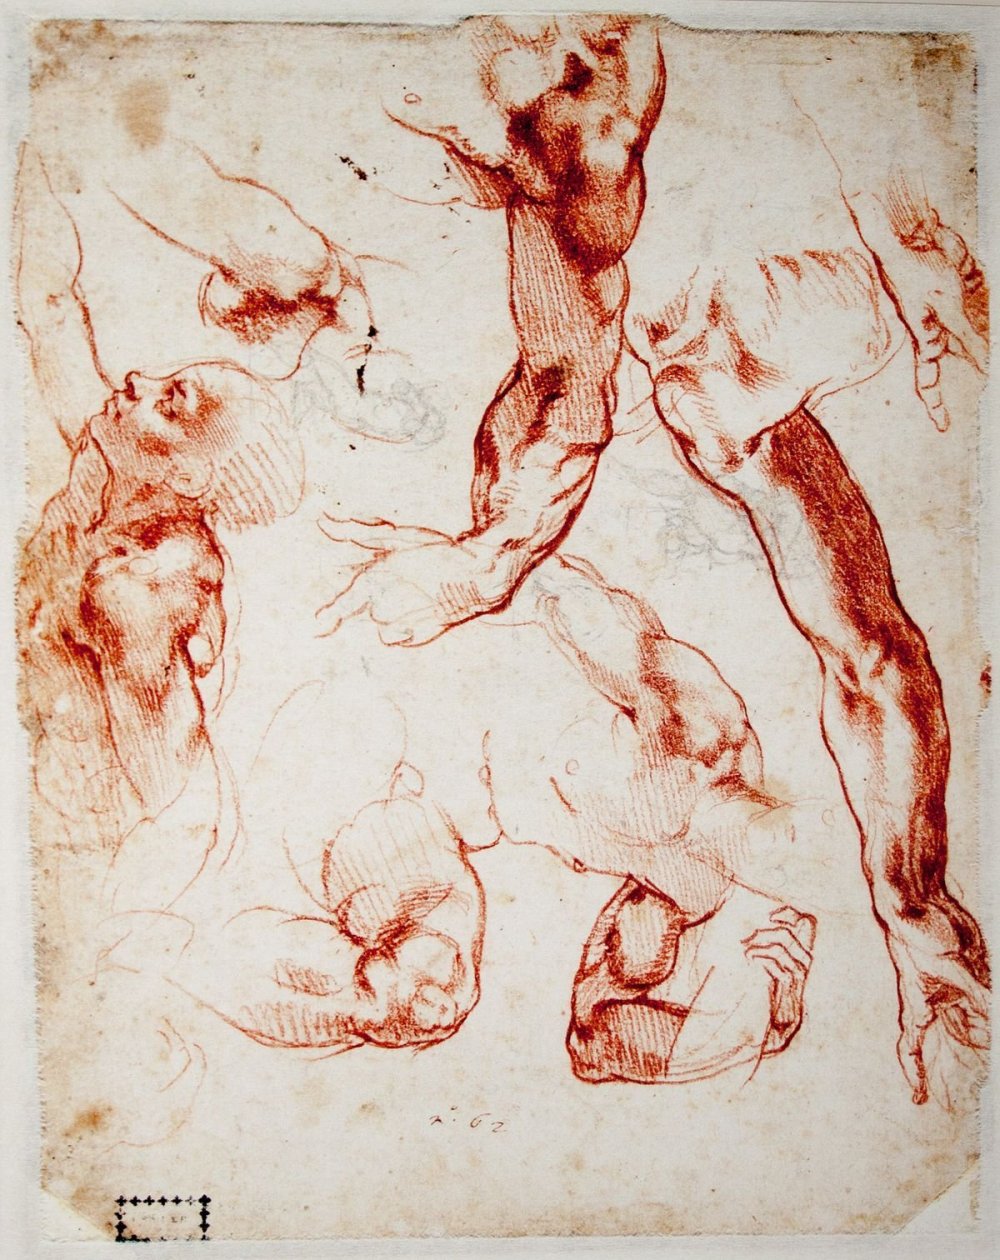 Микеланджело Буонарроти анатомия